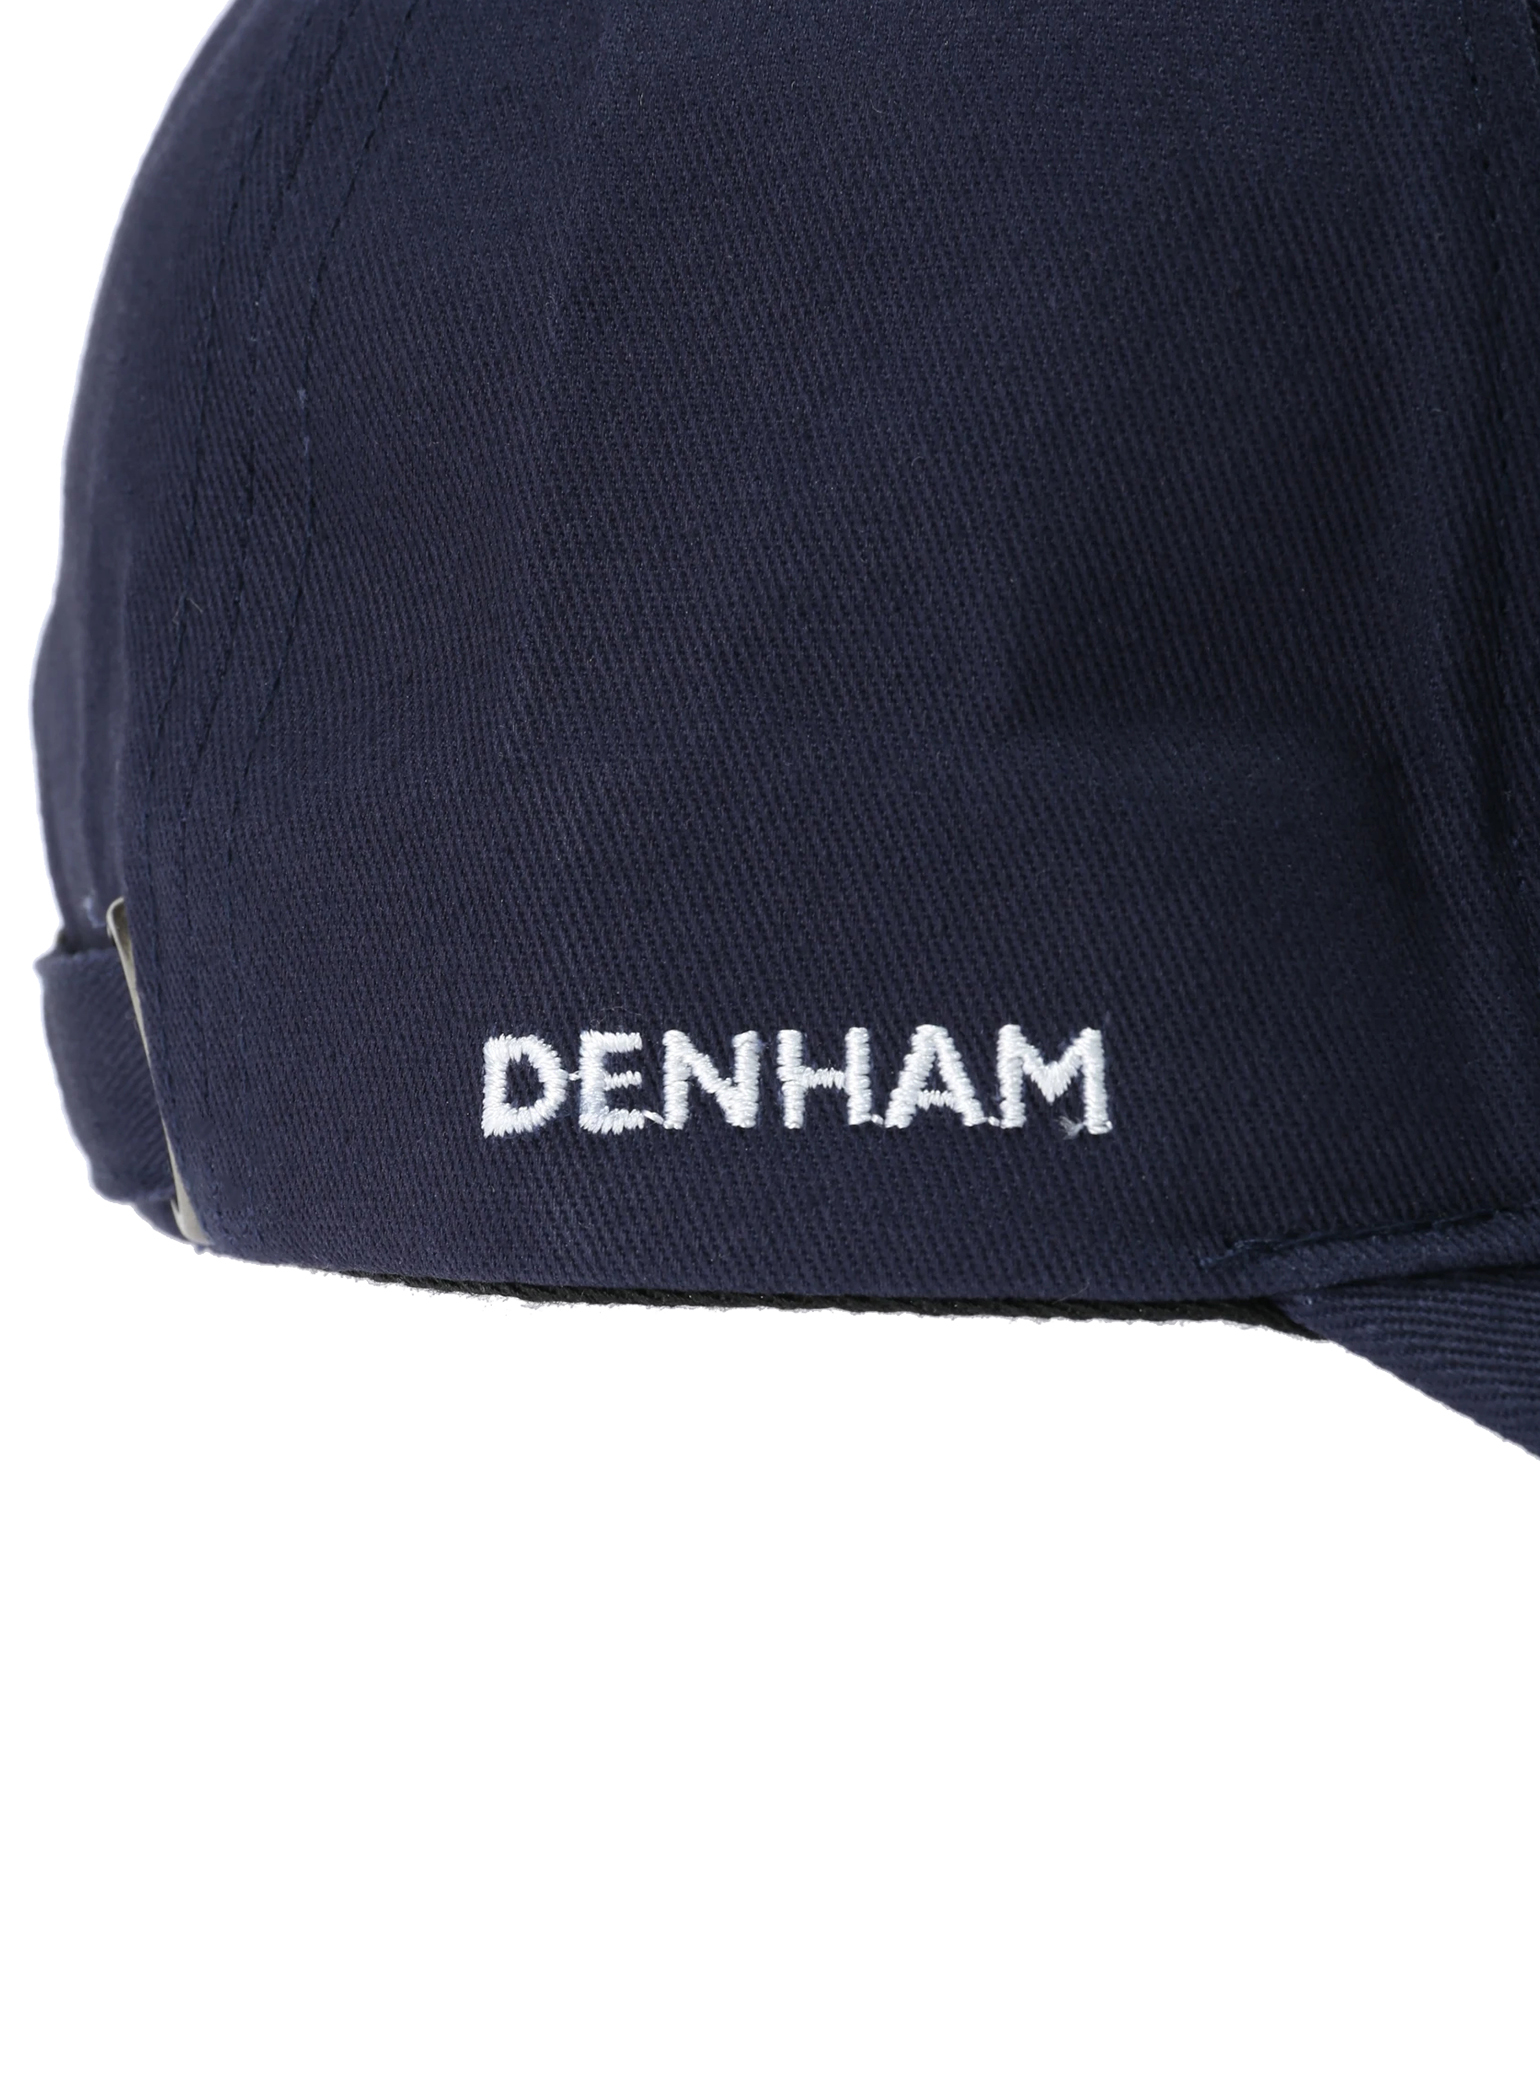 DENHAM(デンハム) |DNHM CAP